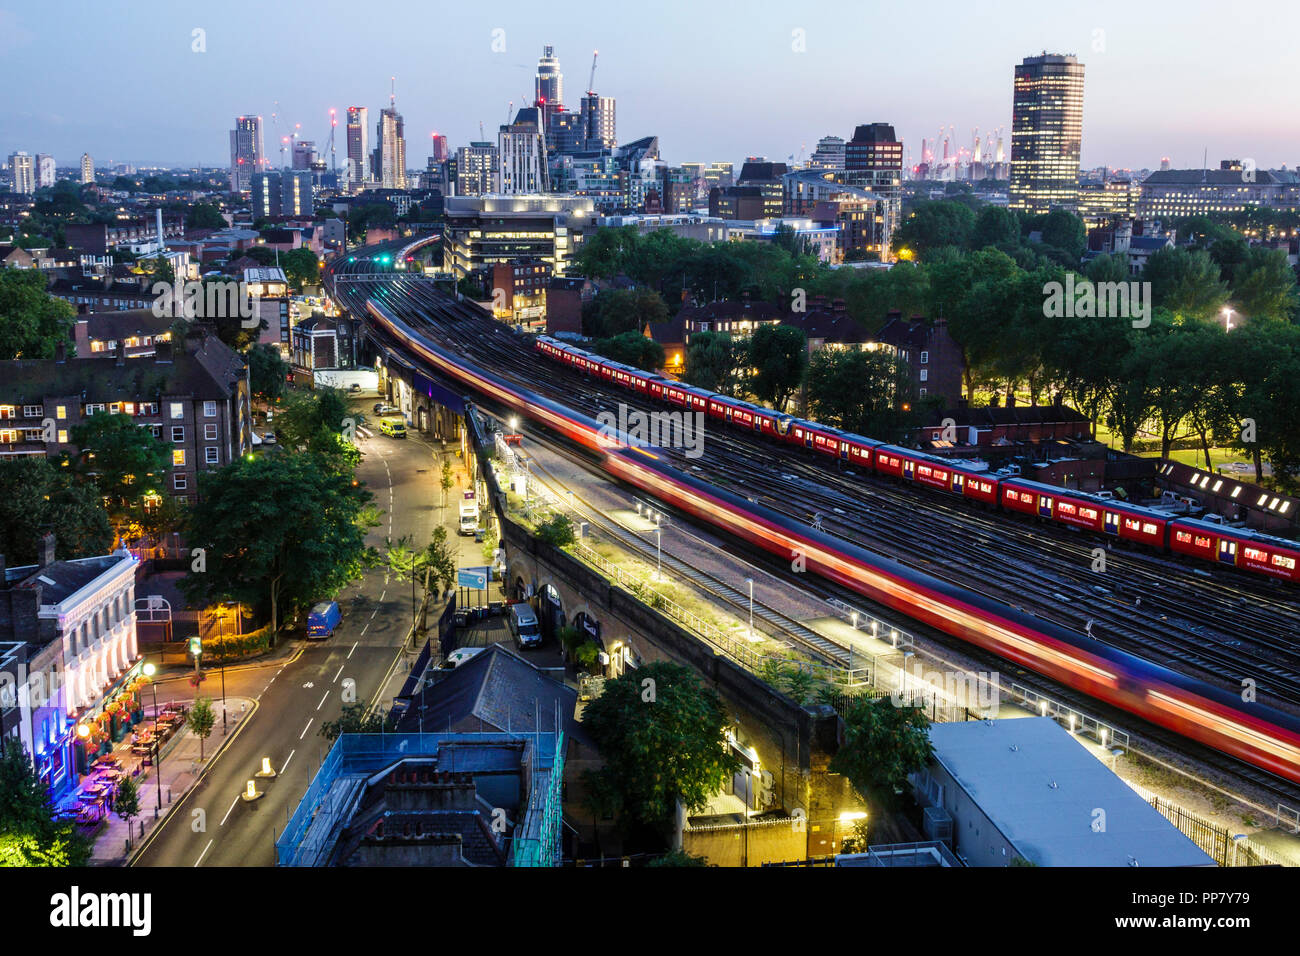 Londra Inghilterra,UK,South Bank,Lambeth North Station,skyline della città,crepuscolo notturno,edifici,tetti,vista dall'alto,South Western Railway,vicino Waterloo Statio Foto Stock